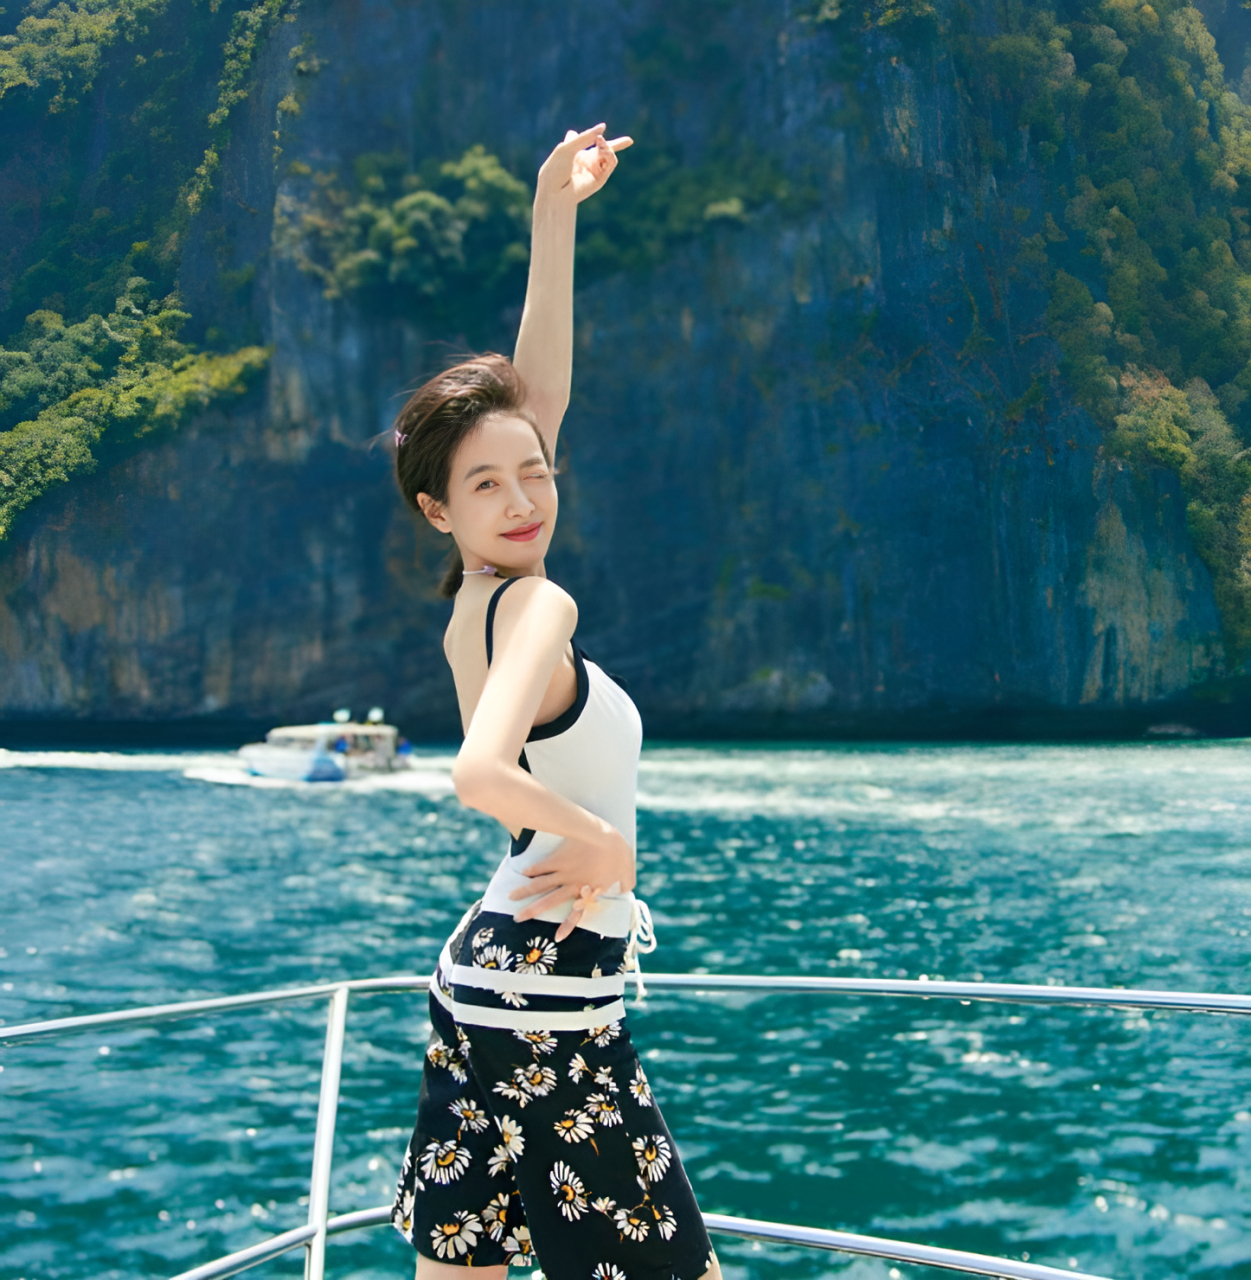 宋茜身着泳衣在泰国度假拍照! 这个身材还不错,但也有人说是普通